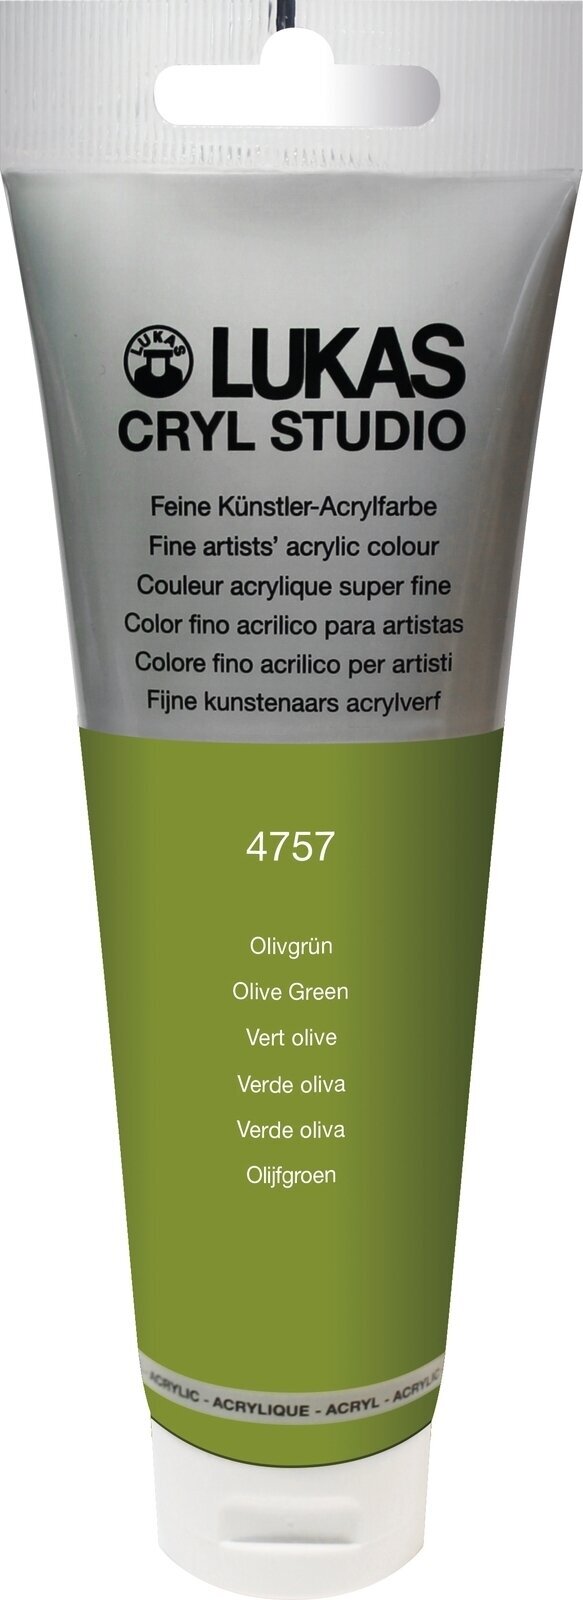 Tinta acrílica Lukas Cryl Studio Acrylic Paint Plastic Tube Tinta acrílica Olive Green 125 ml 1 un.